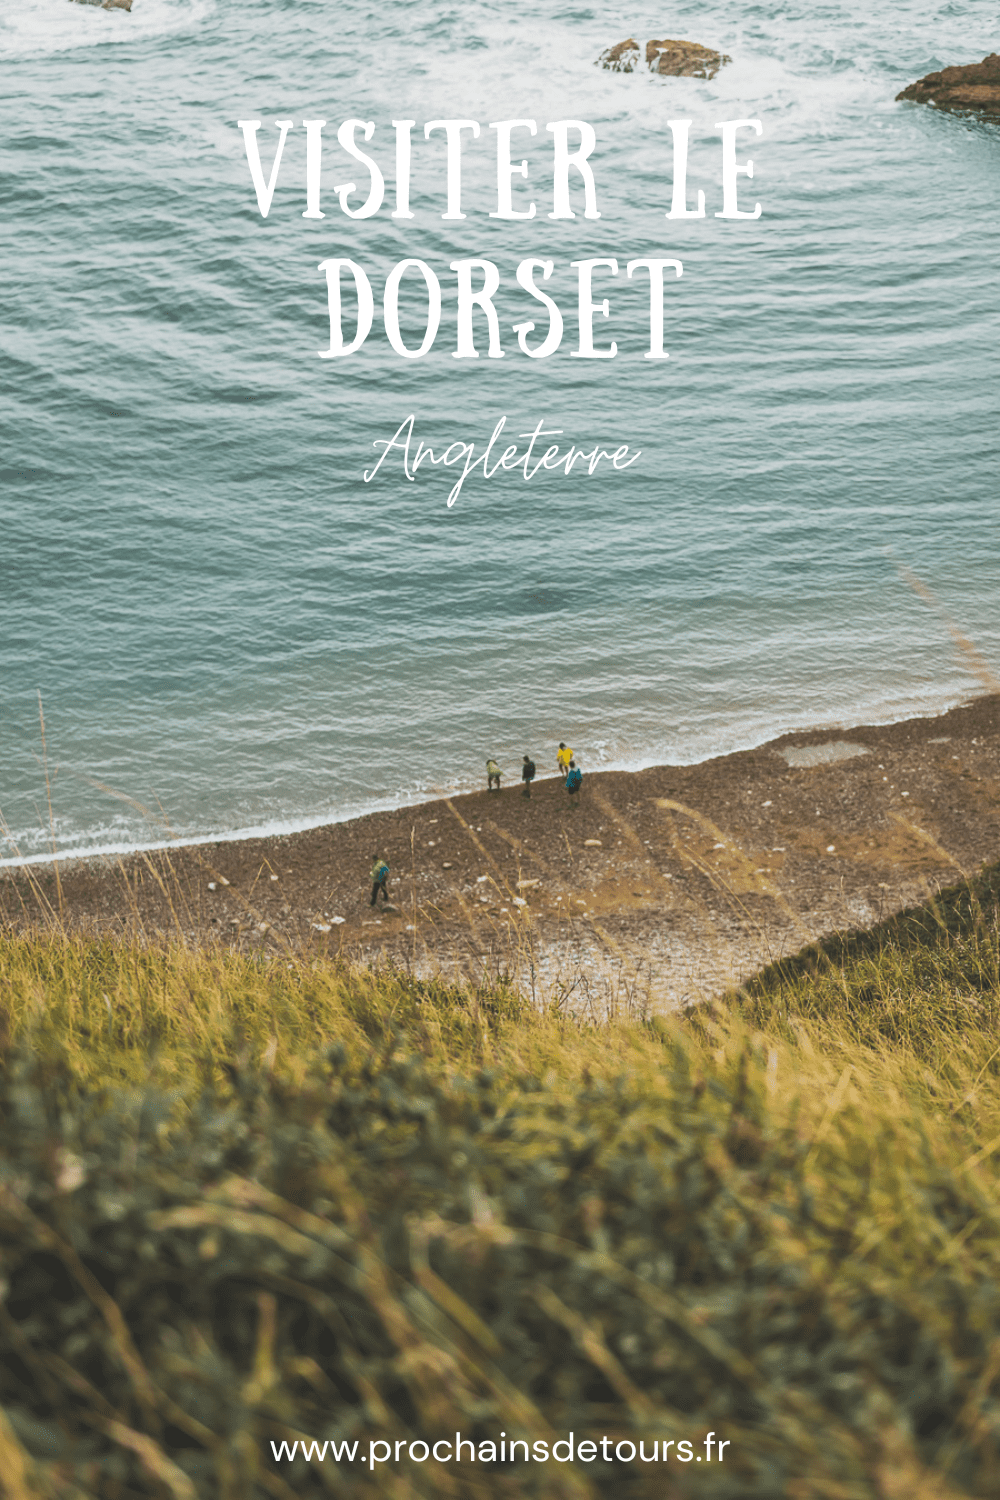 Découvrez la beauté du Dorset, une destination incontournable pour les amoureux de nature. Avec sa célèbre Côte jurassique, ses paysages à couper le souffle et ses charmants villages, le Dorset offre une expérience de voyage inoubliable. Partez en road trip dans le sud de l'Angleterre et explorez des sites emblématiques. Que vous soyez en couple, en famille ou entre amis, le Dorset vous promet des vacances en Europe superbes. Planifiez dès maintenant votre escapade au Dorset !